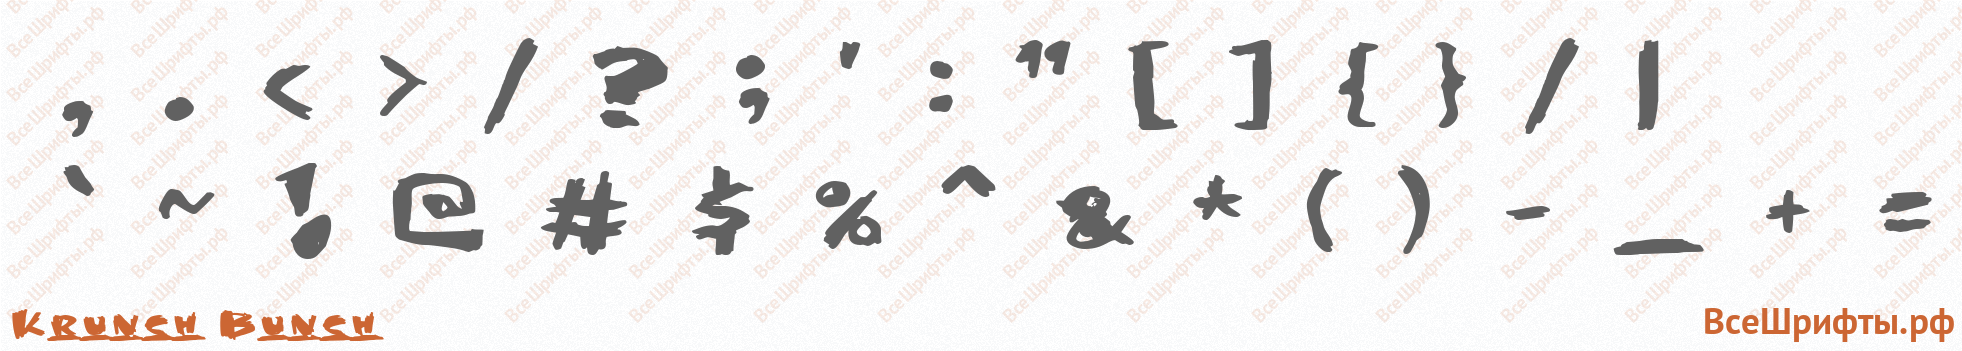 Шрифт Krunch Bunch со знаками препинания и пунктуации